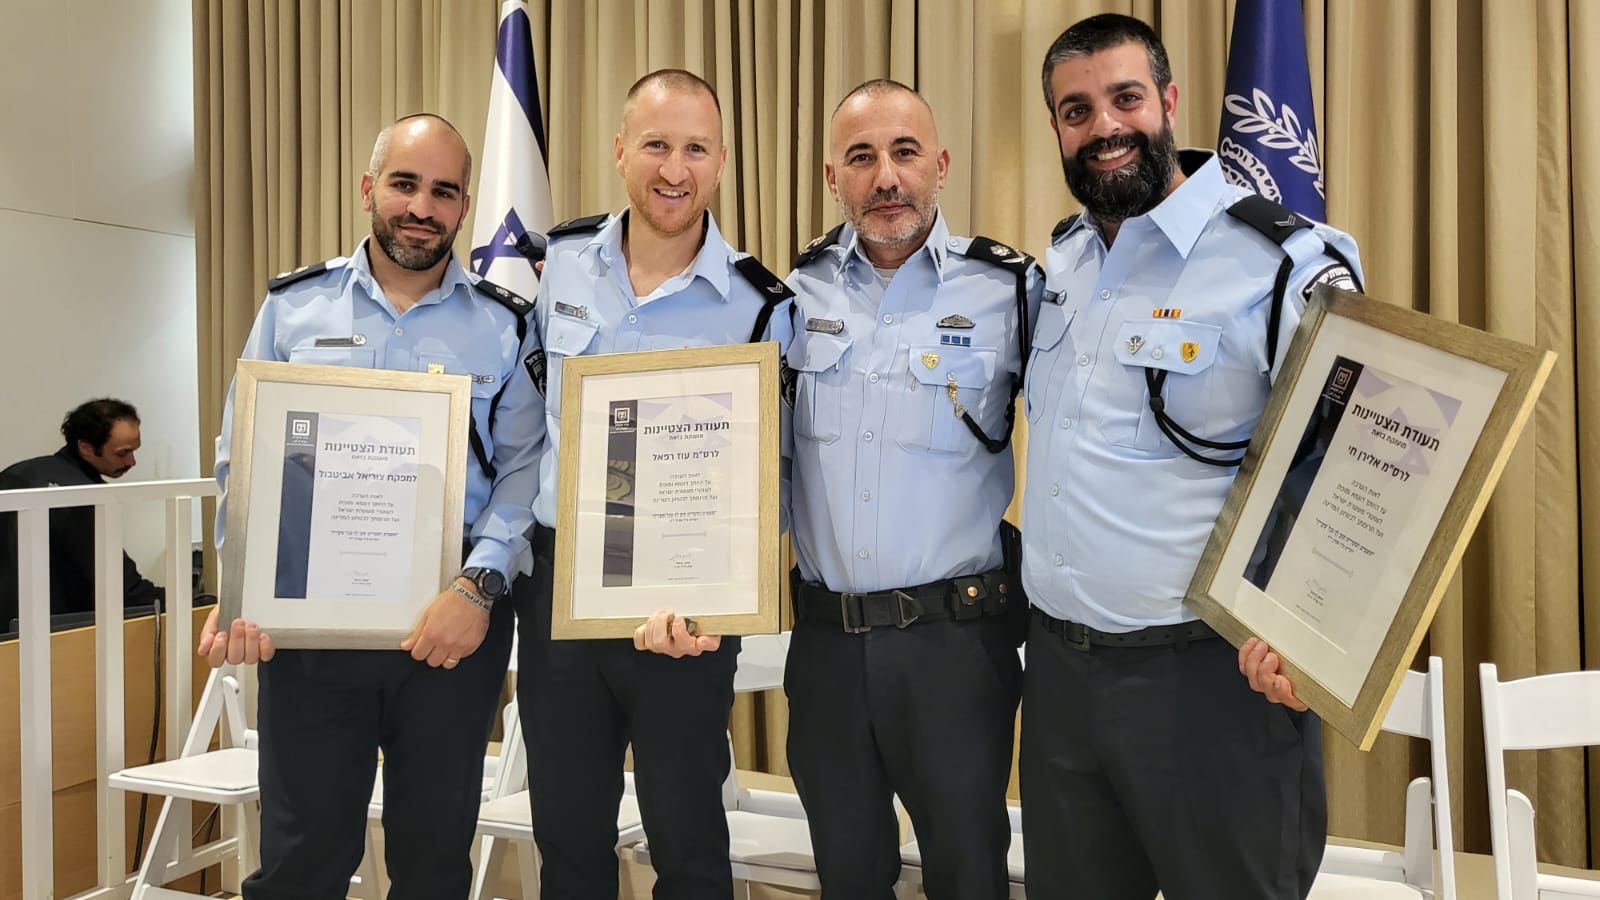 גאווה מקומית: שלושה משוטרי מחוז ירושלים זכו להוקרה מיוחדת והוענקו להם אות מצטיין נשיא המדינה